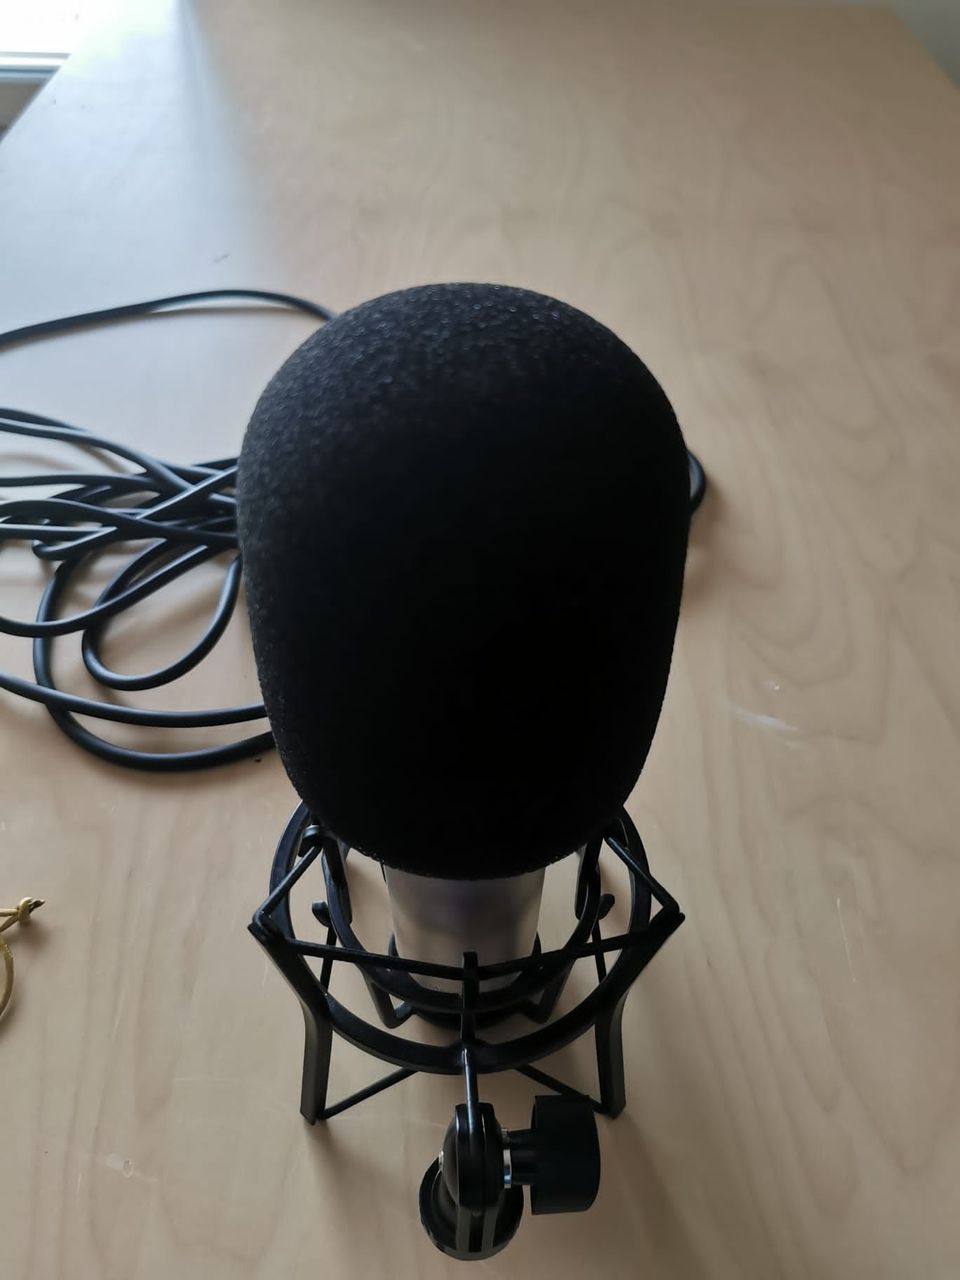 Rode NT1-A Suuri kalvomikrofoni